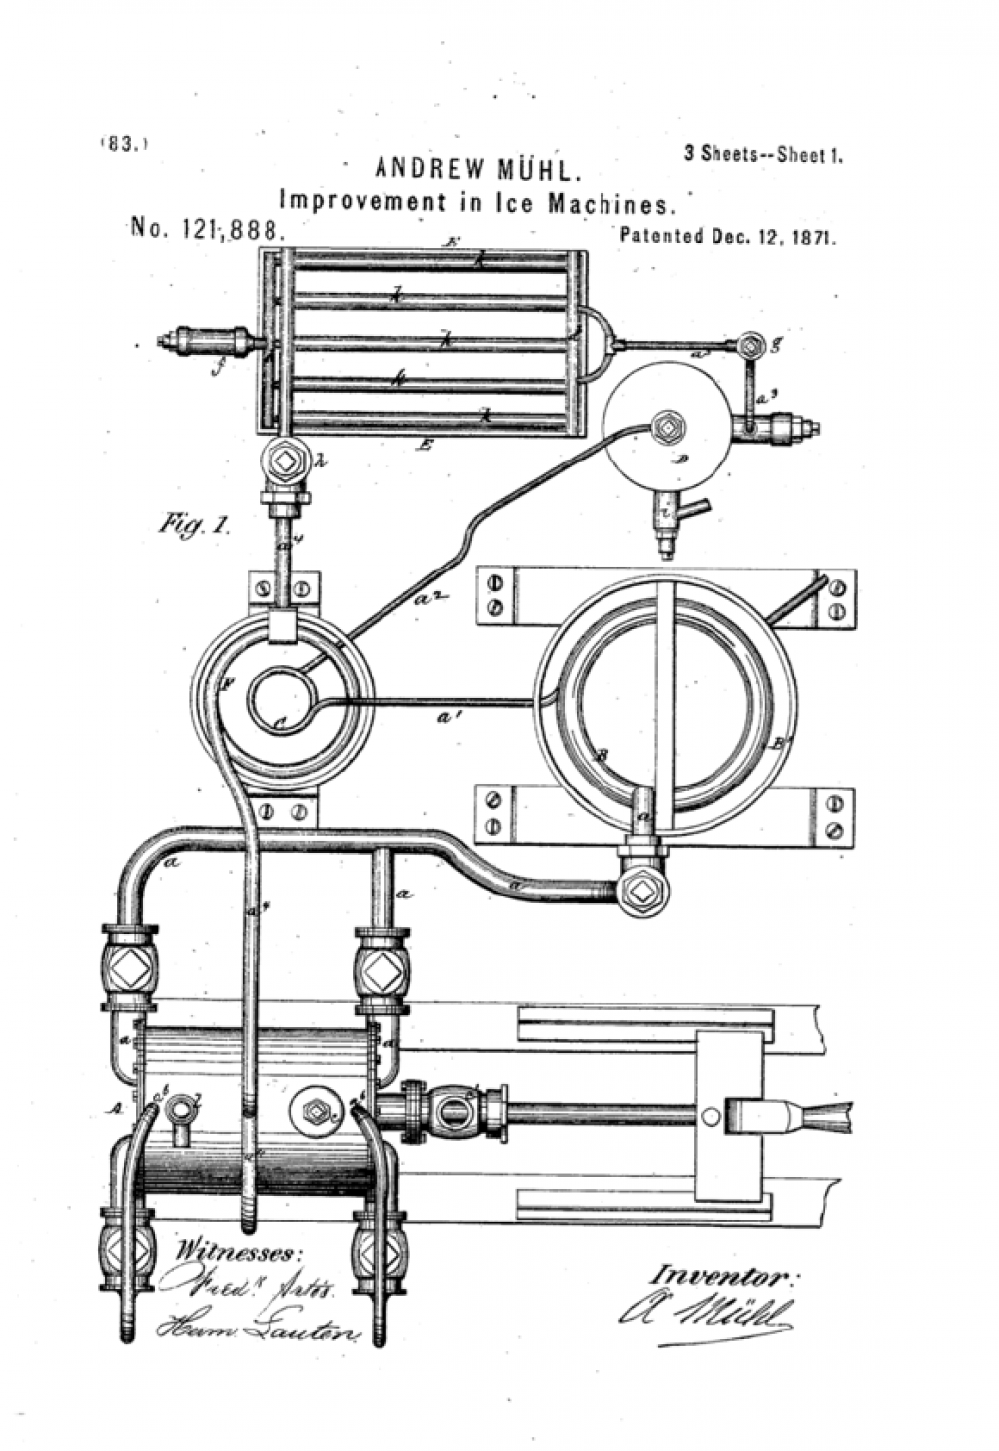 Muhl’s patented Icemaker